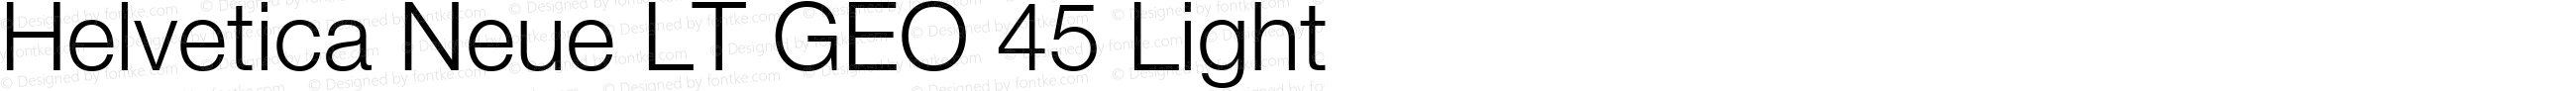 Helvetica Neue LT GEO 45 Light